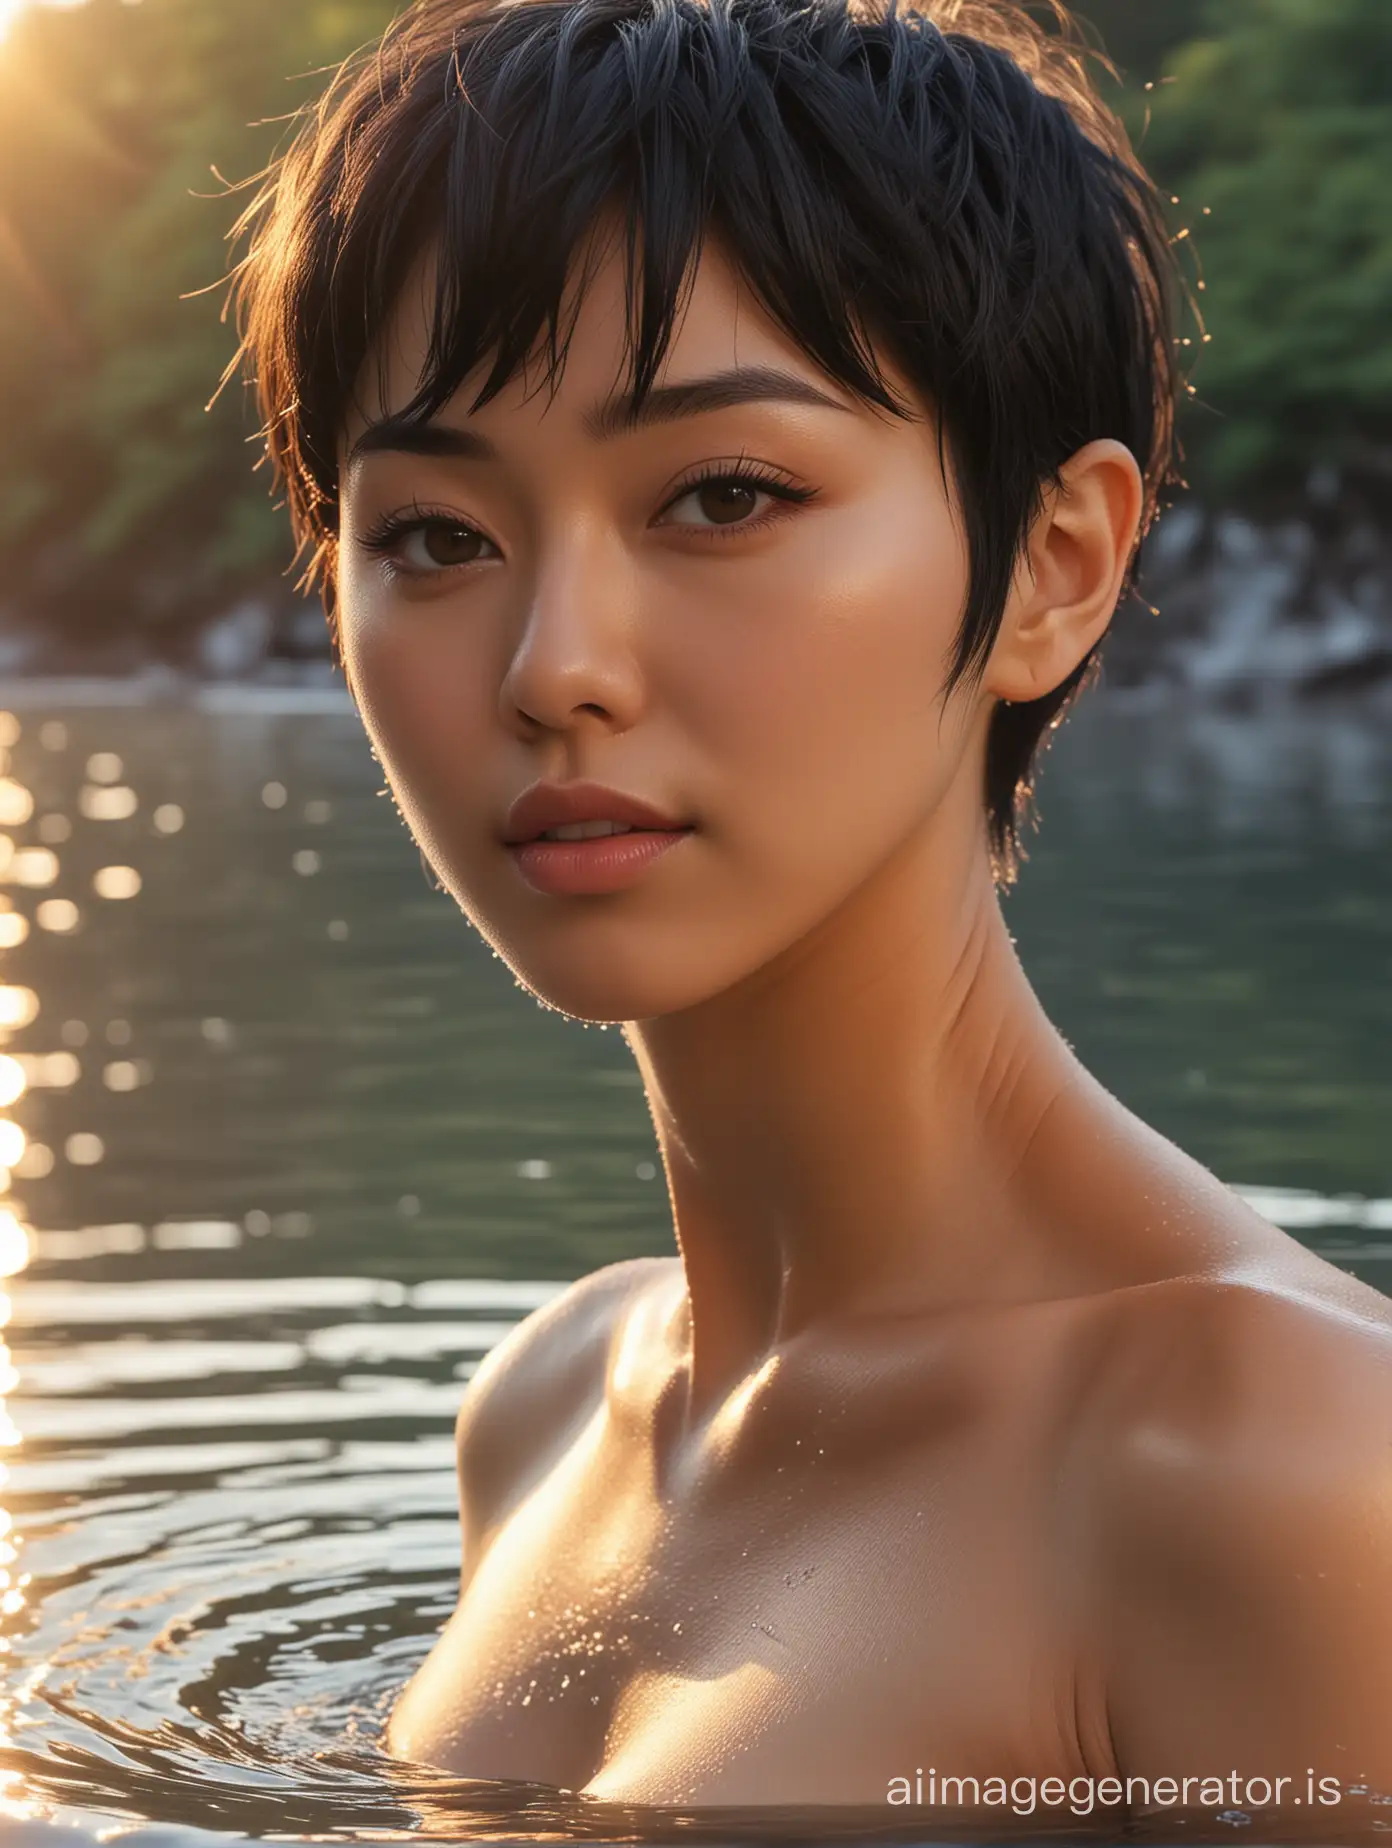 Stunning-Japanese-Woman-Enjoying-Sunrise-at-Lake-in-Elegant-Glamour